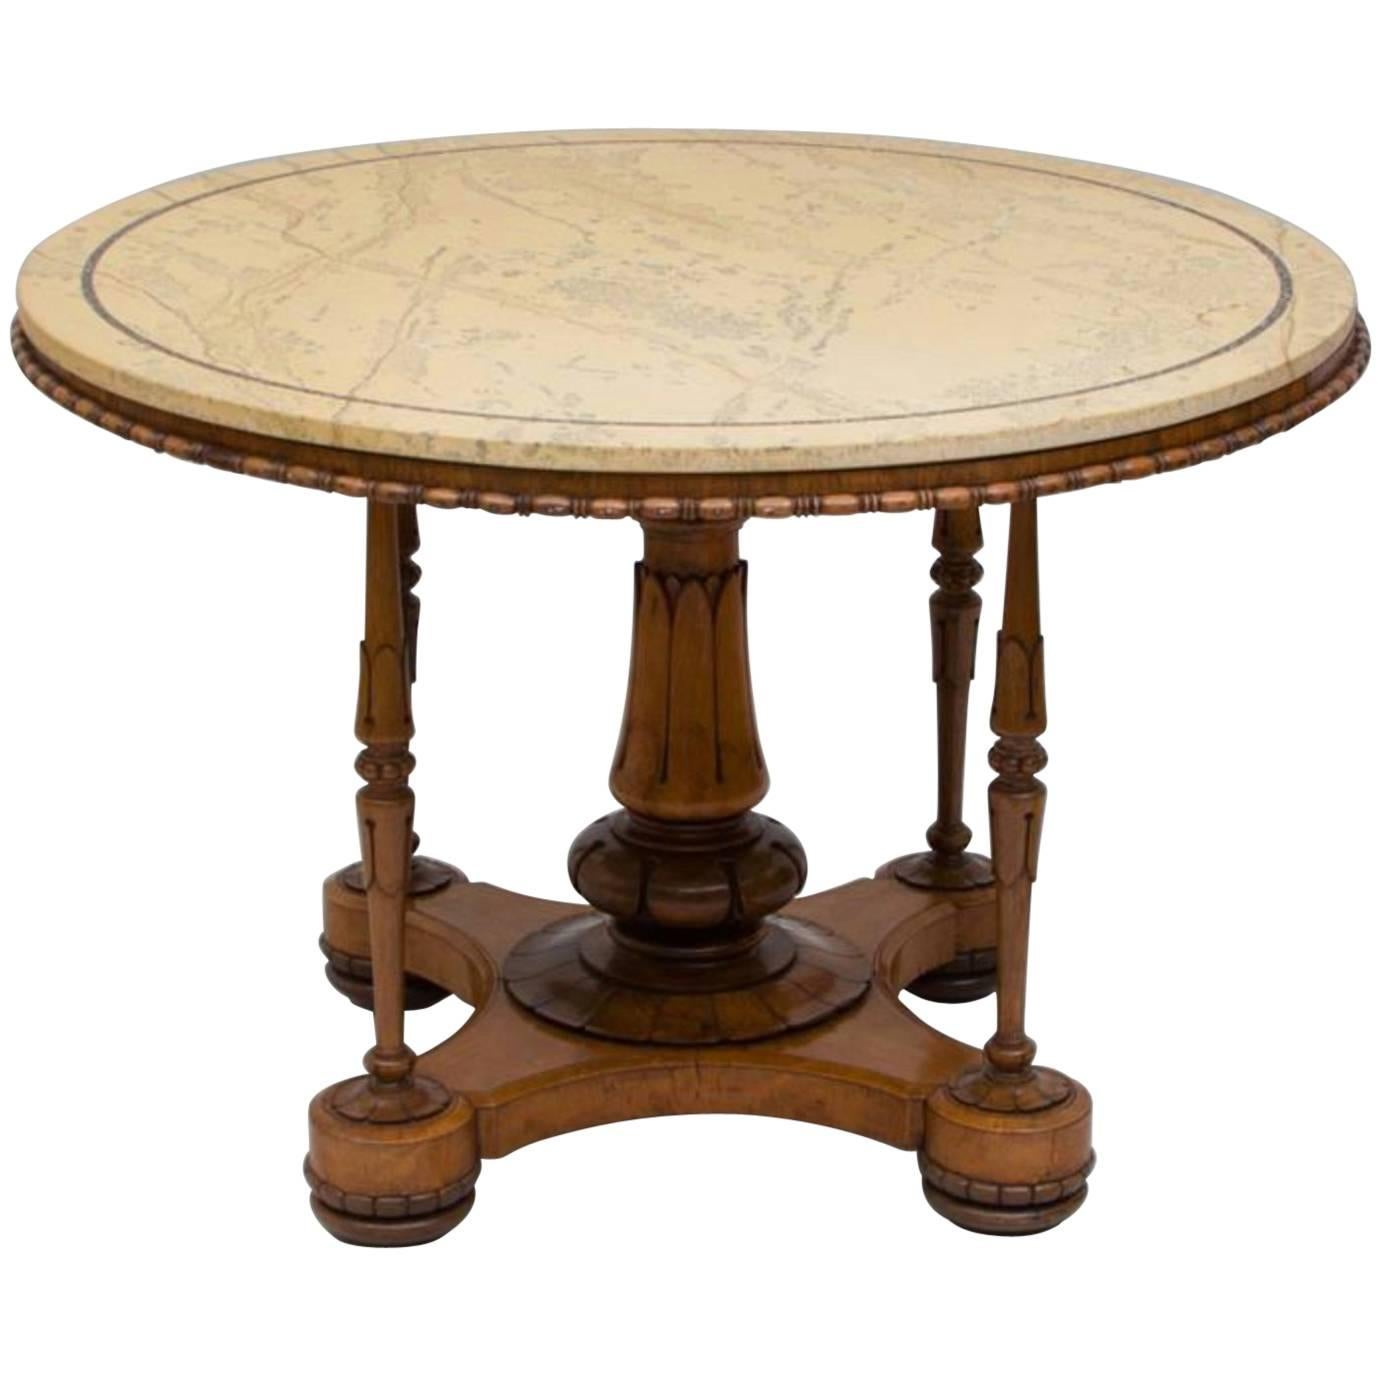 William IV.-Tisch aus geschnitztem Vogelaugenahorn und Rosenholz, englischer Stil